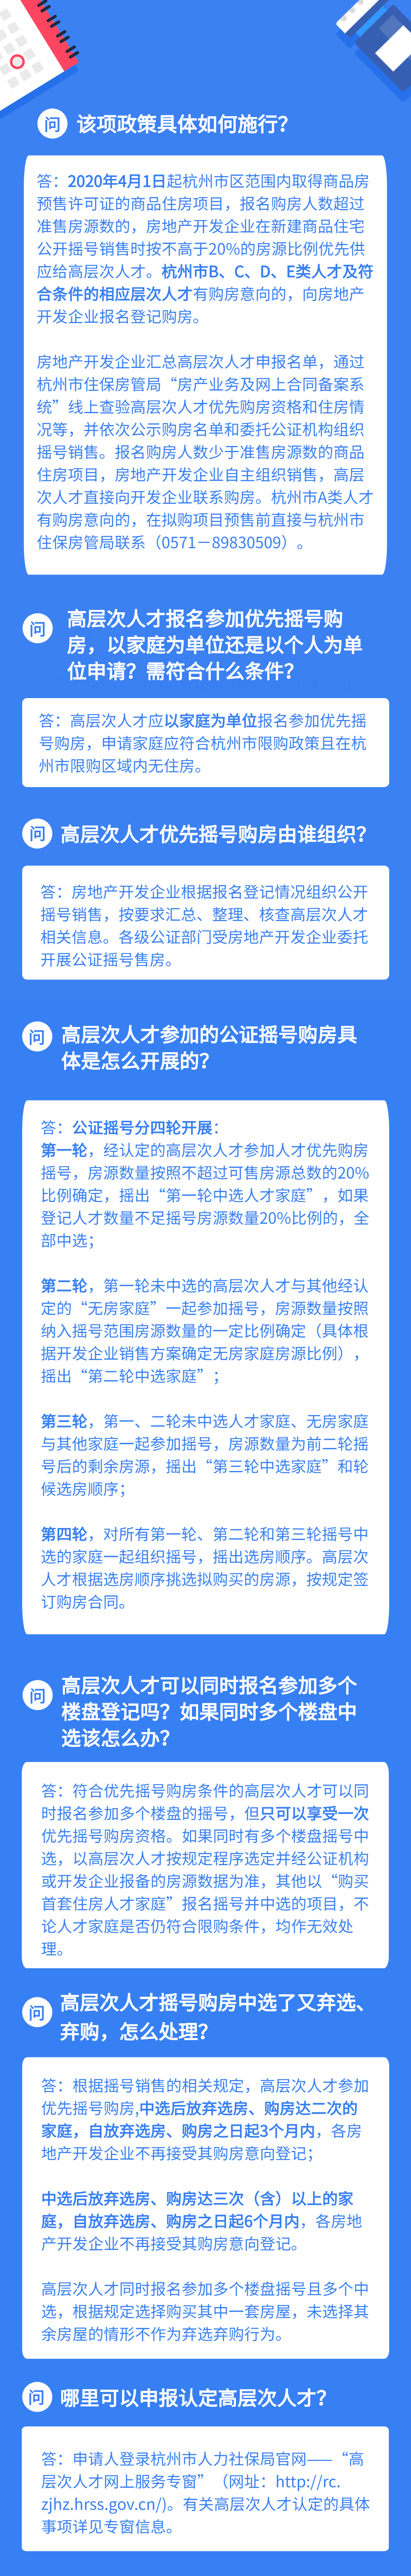 2020年杭州市高层次人才优先购房政策详细解读